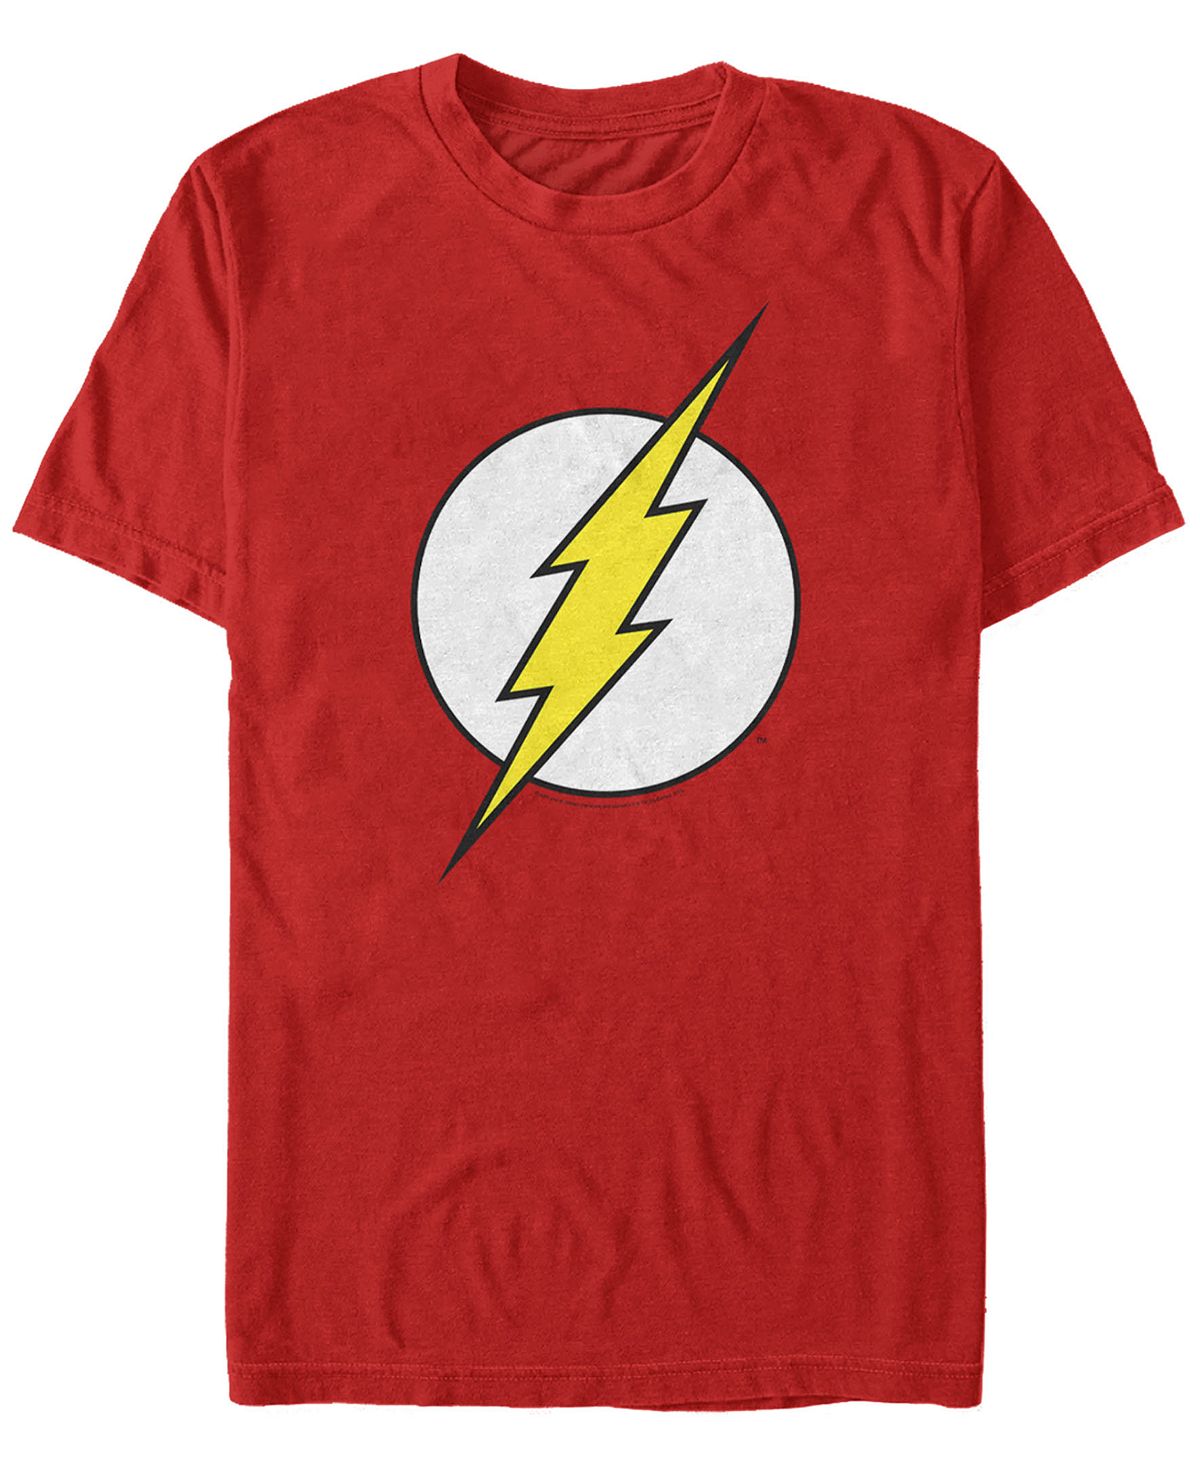 Мужская футболка с коротким рукавом с логотипом dc the flash classic lightning bolt Fifth Sun, красный цена и фото